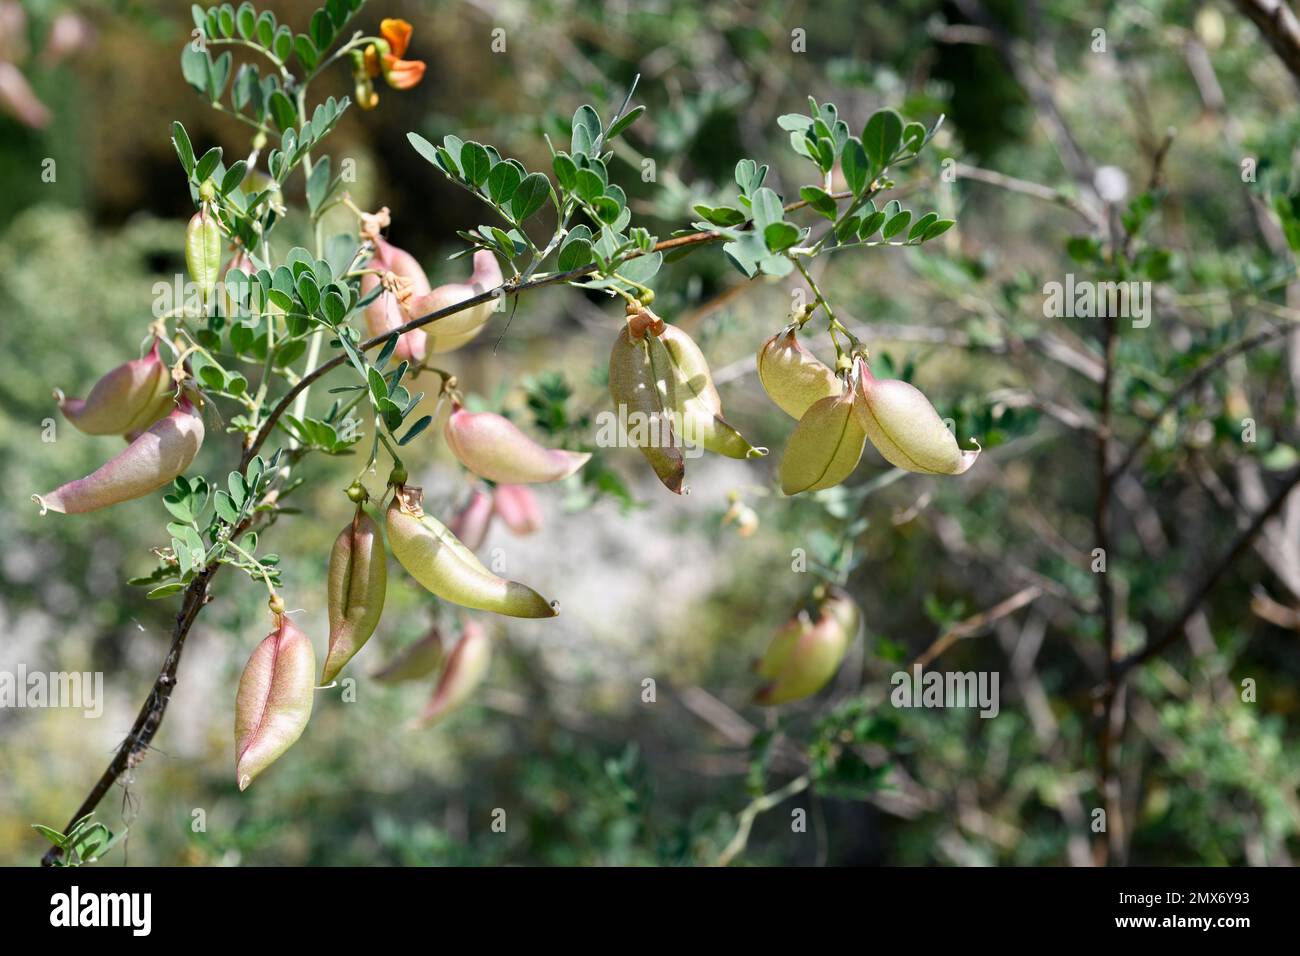 Blase-senna (Colutea orientalis) ist ein in Osteuropa einheimischer Milchstrauch. Obstdetails. Stockfoto